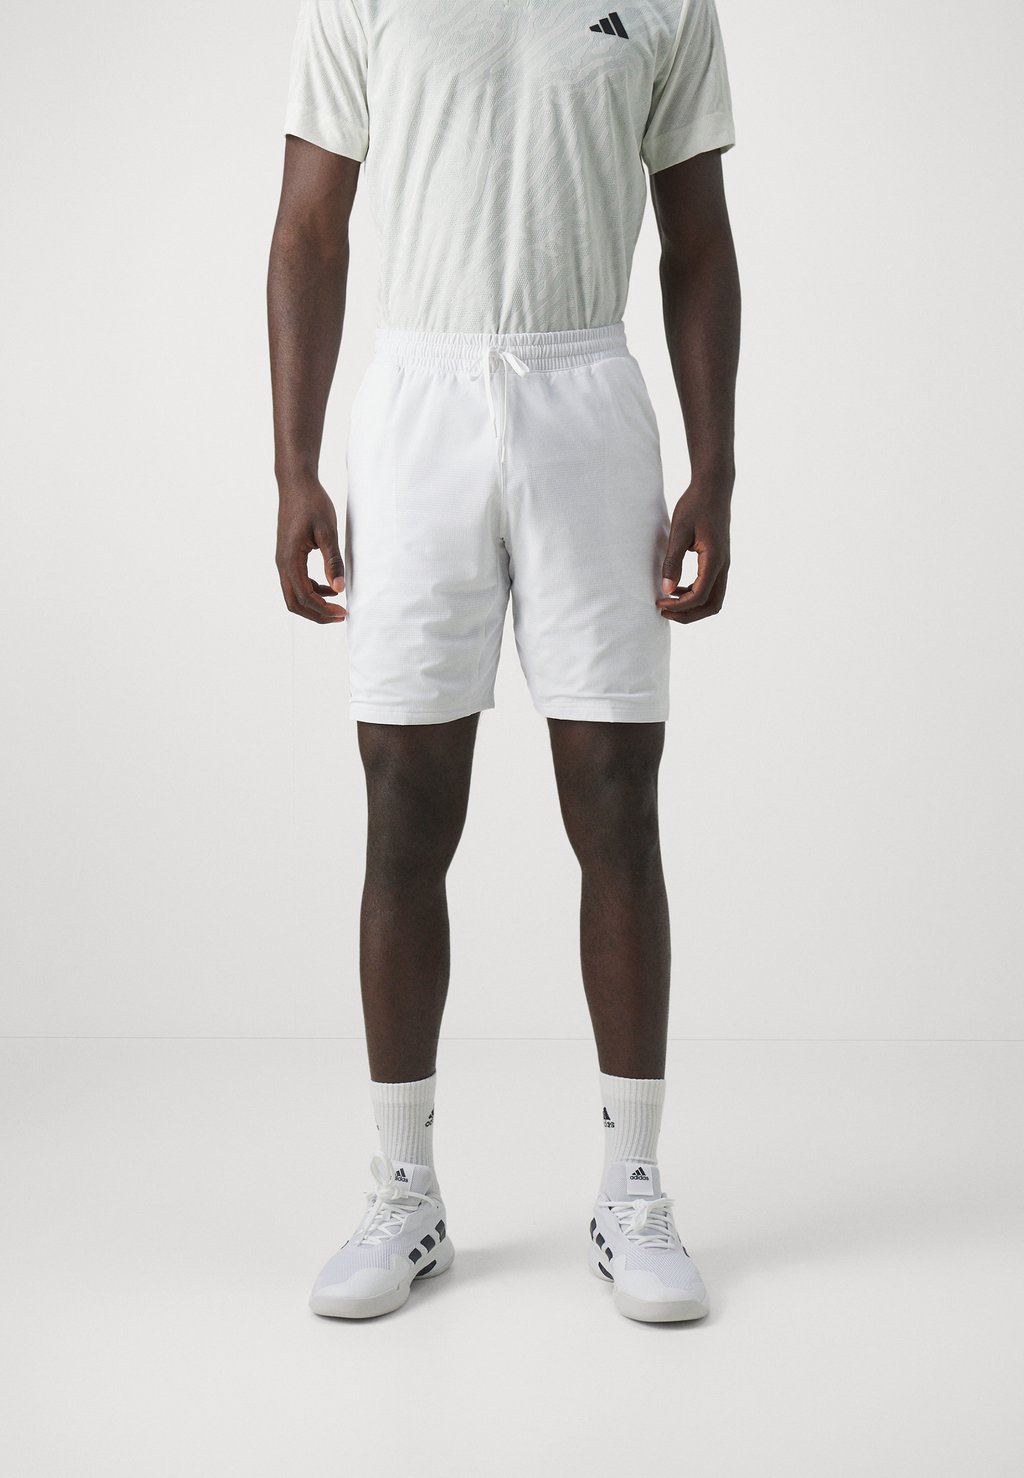 Спортивные шорты Ergo Adidas, белый